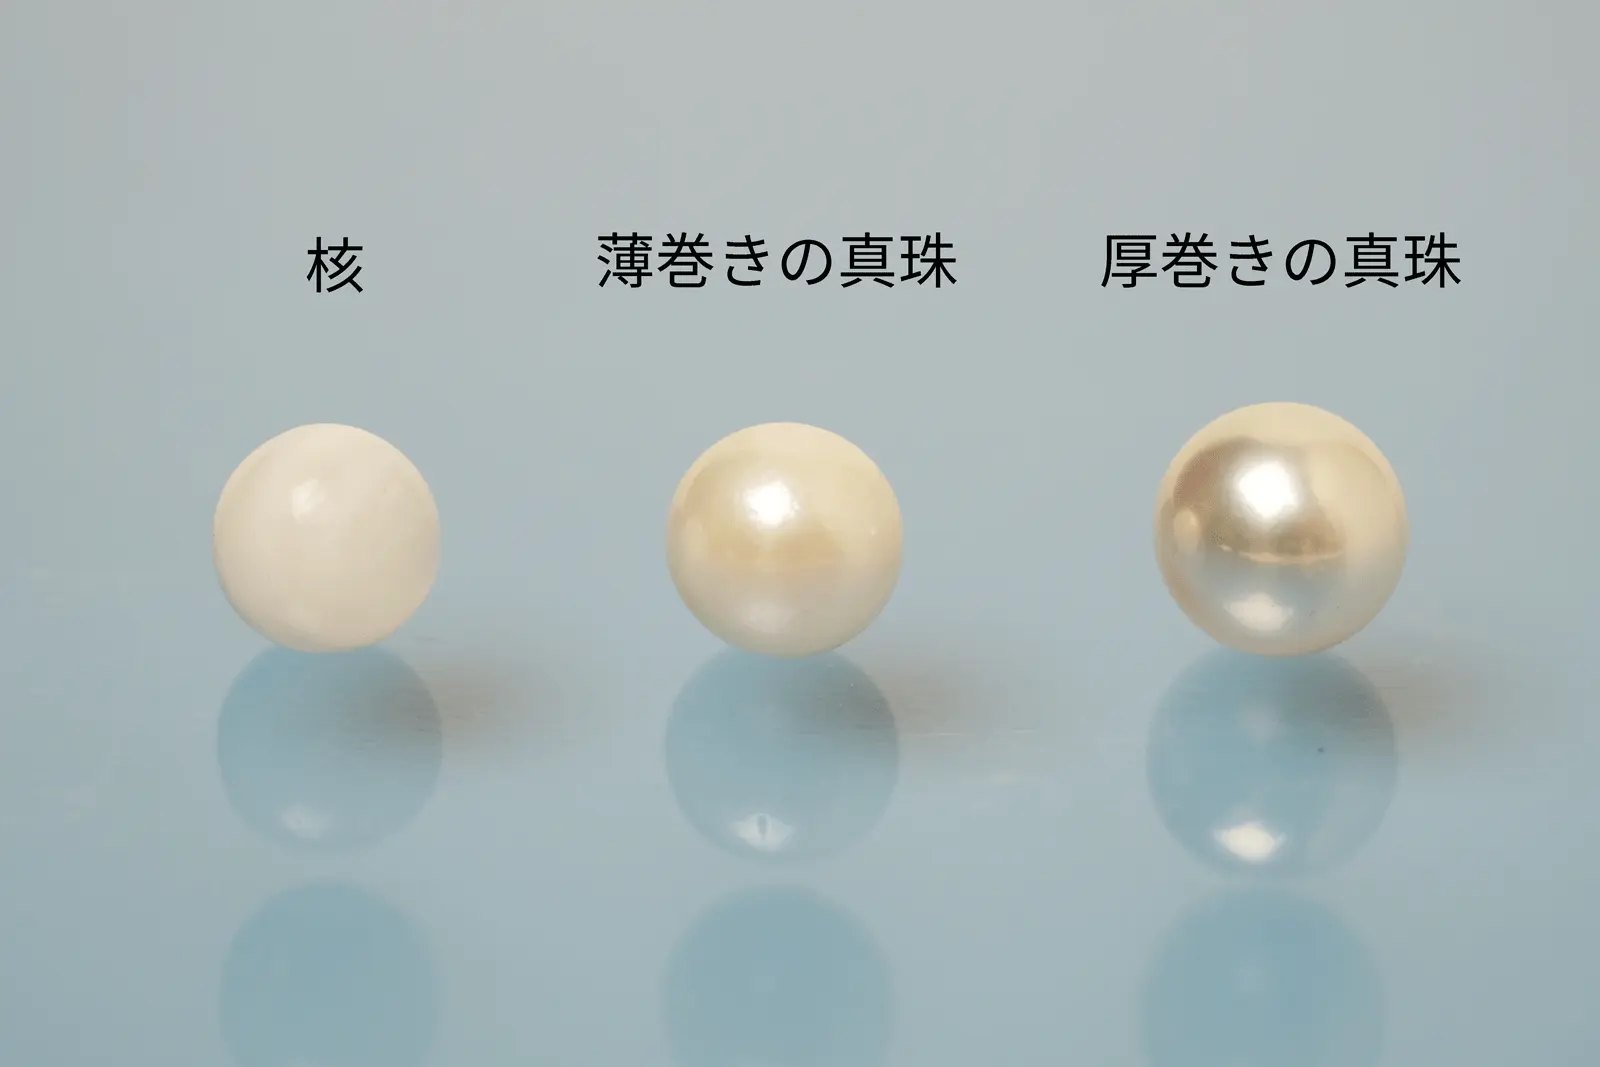 核、薄巻き真珠、厚巻き真珠の比較写真